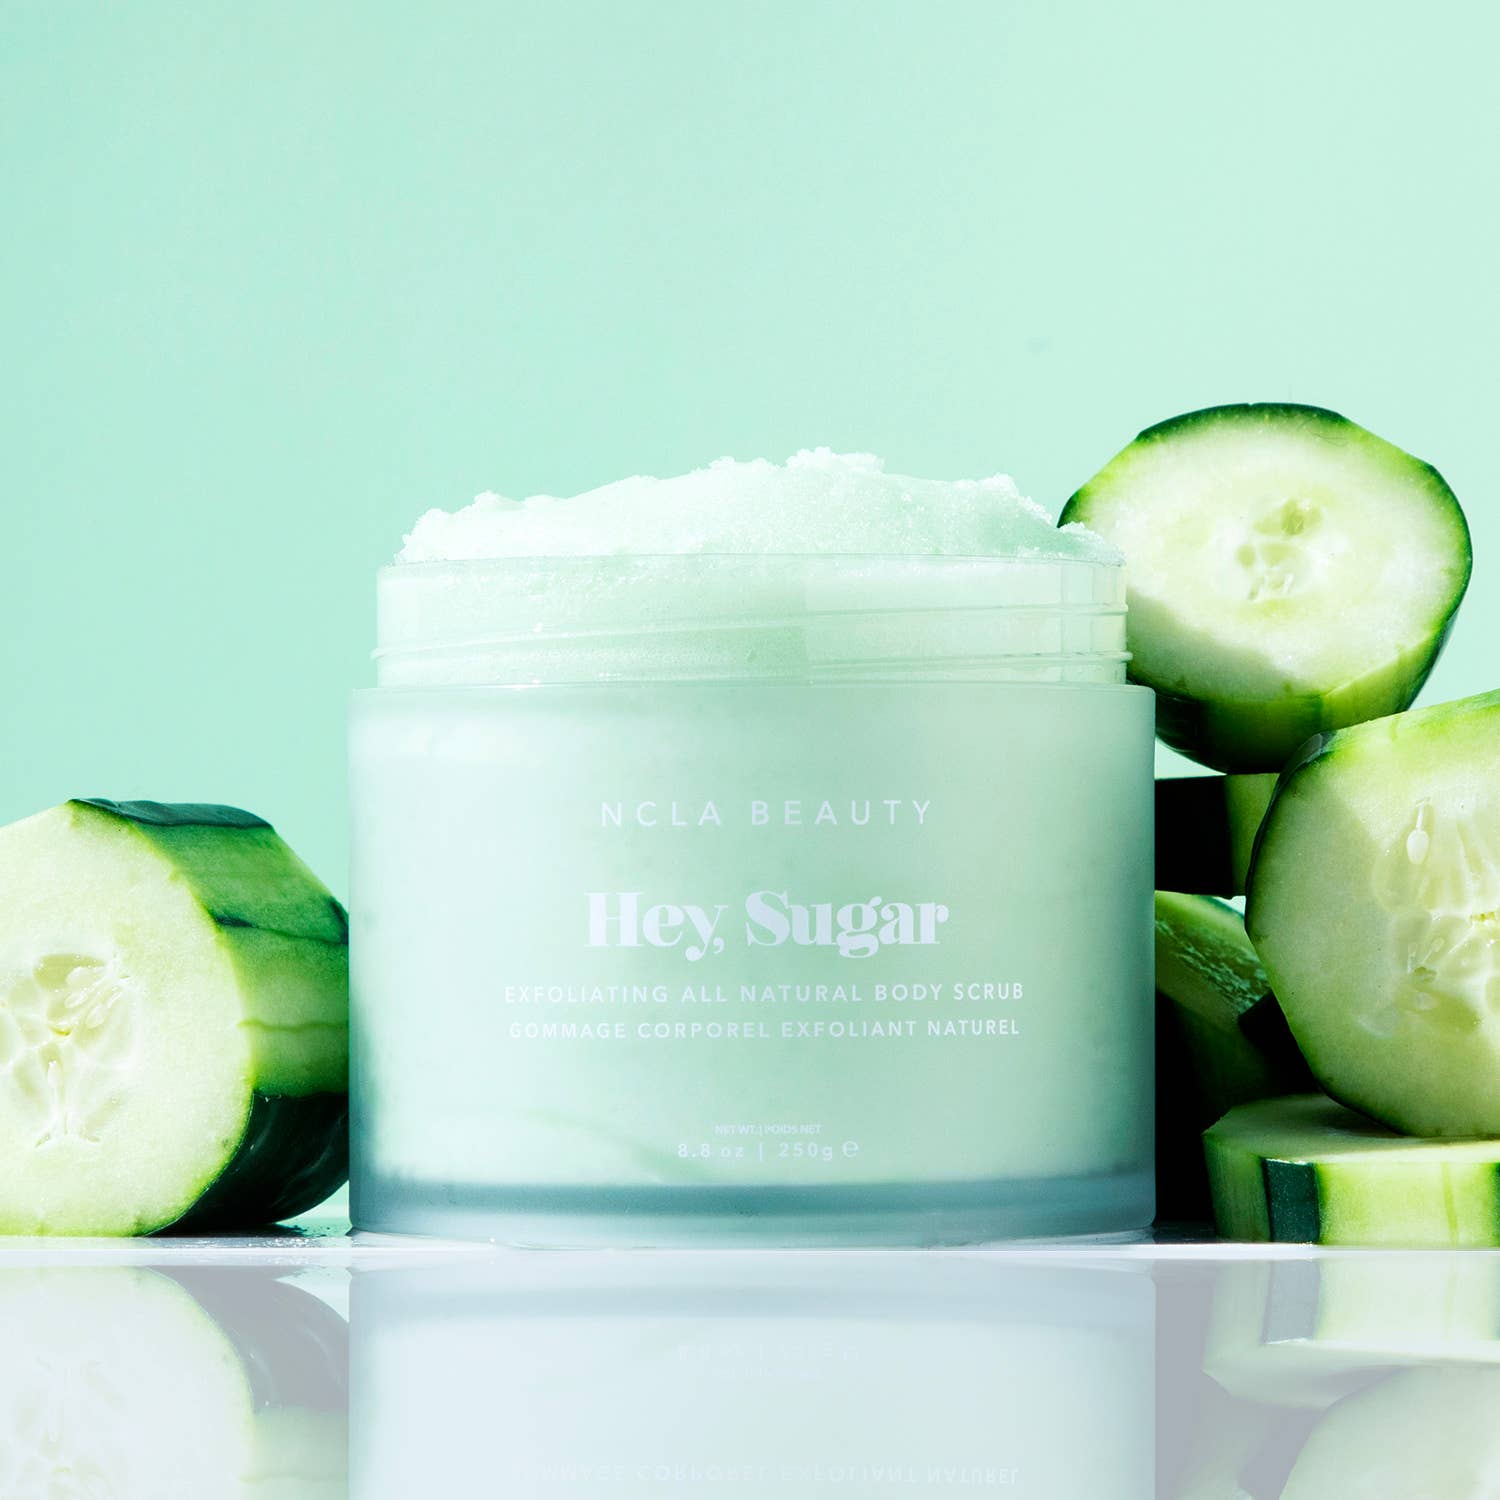 Hey, Sugar All Natural Body Scrub - Cucumber | NCLA